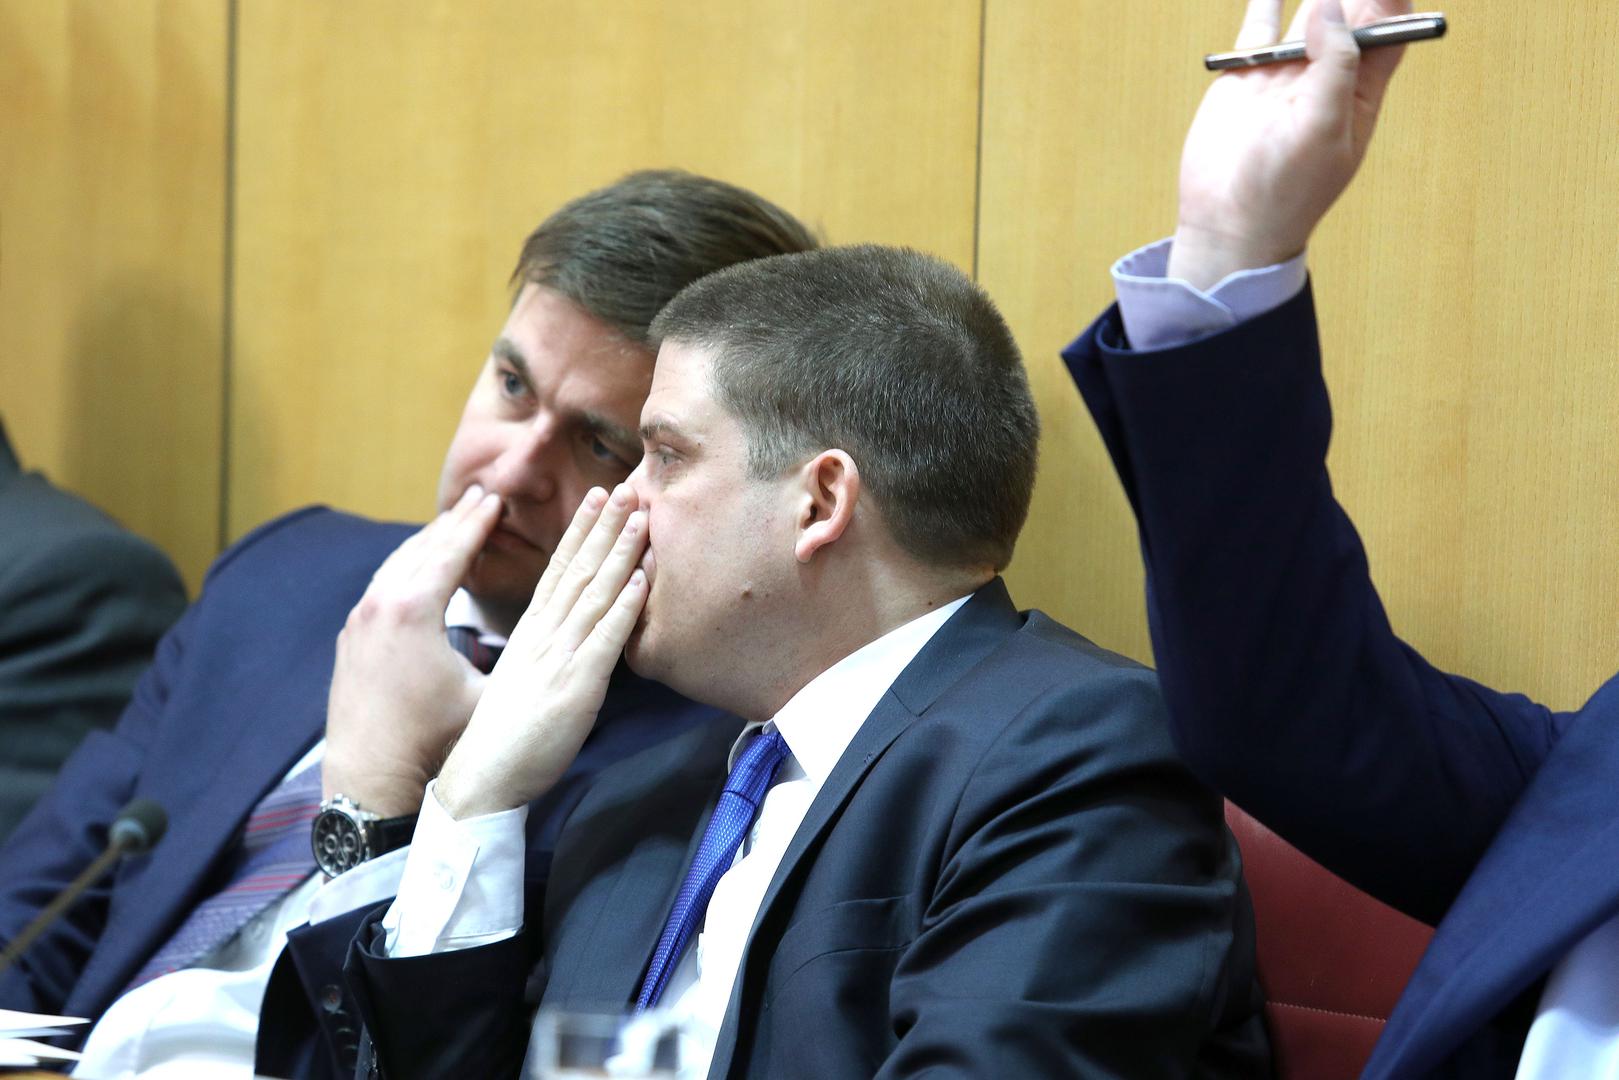 Razgovor ministara Tomislava Ćorića i Olega Butkovića za vrijeme sjednice